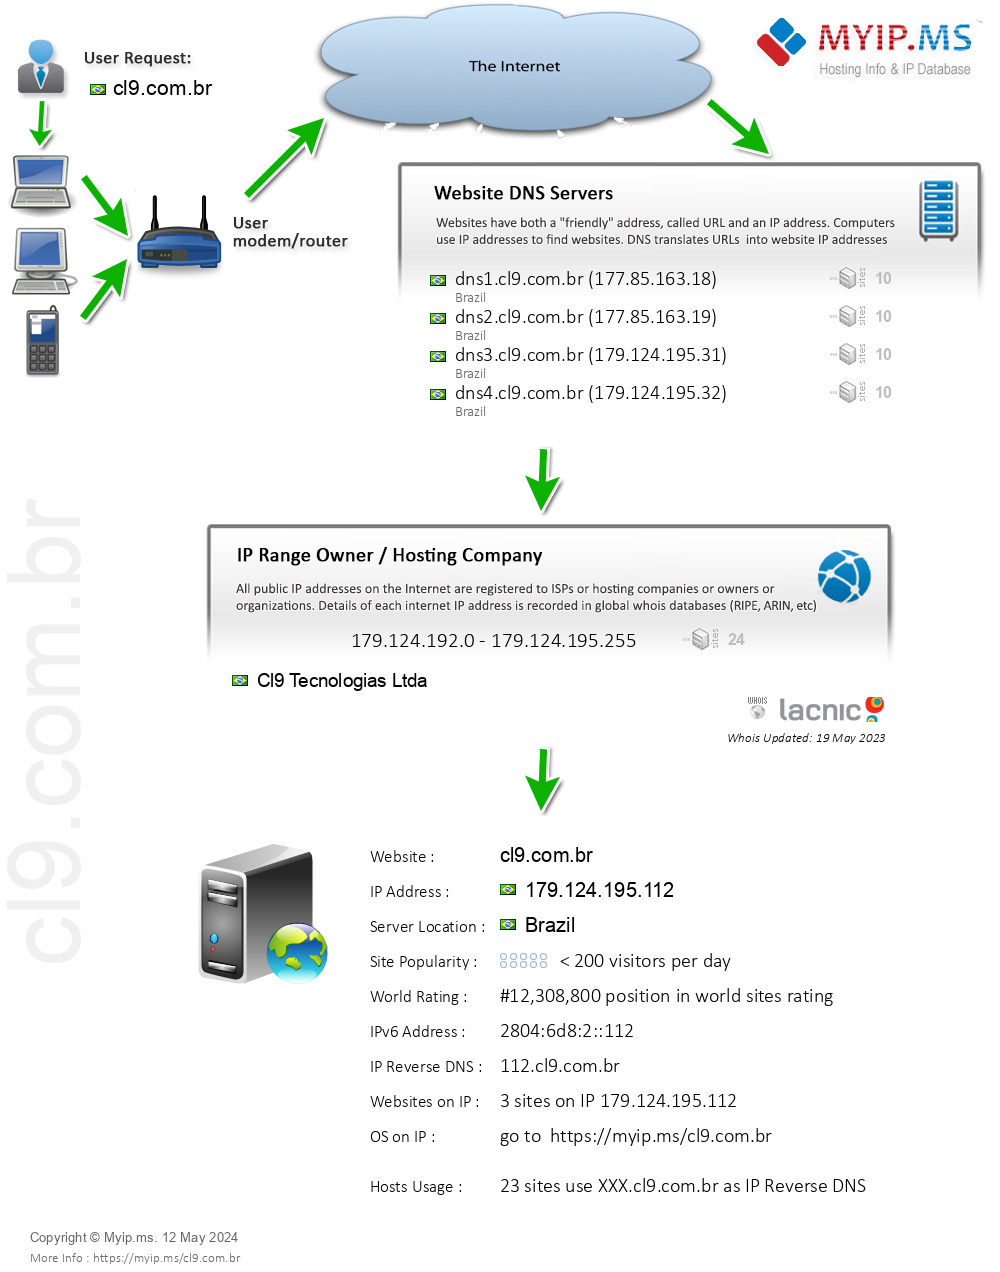 Cl9.com.br - Website Hosting Visual IP Diagram